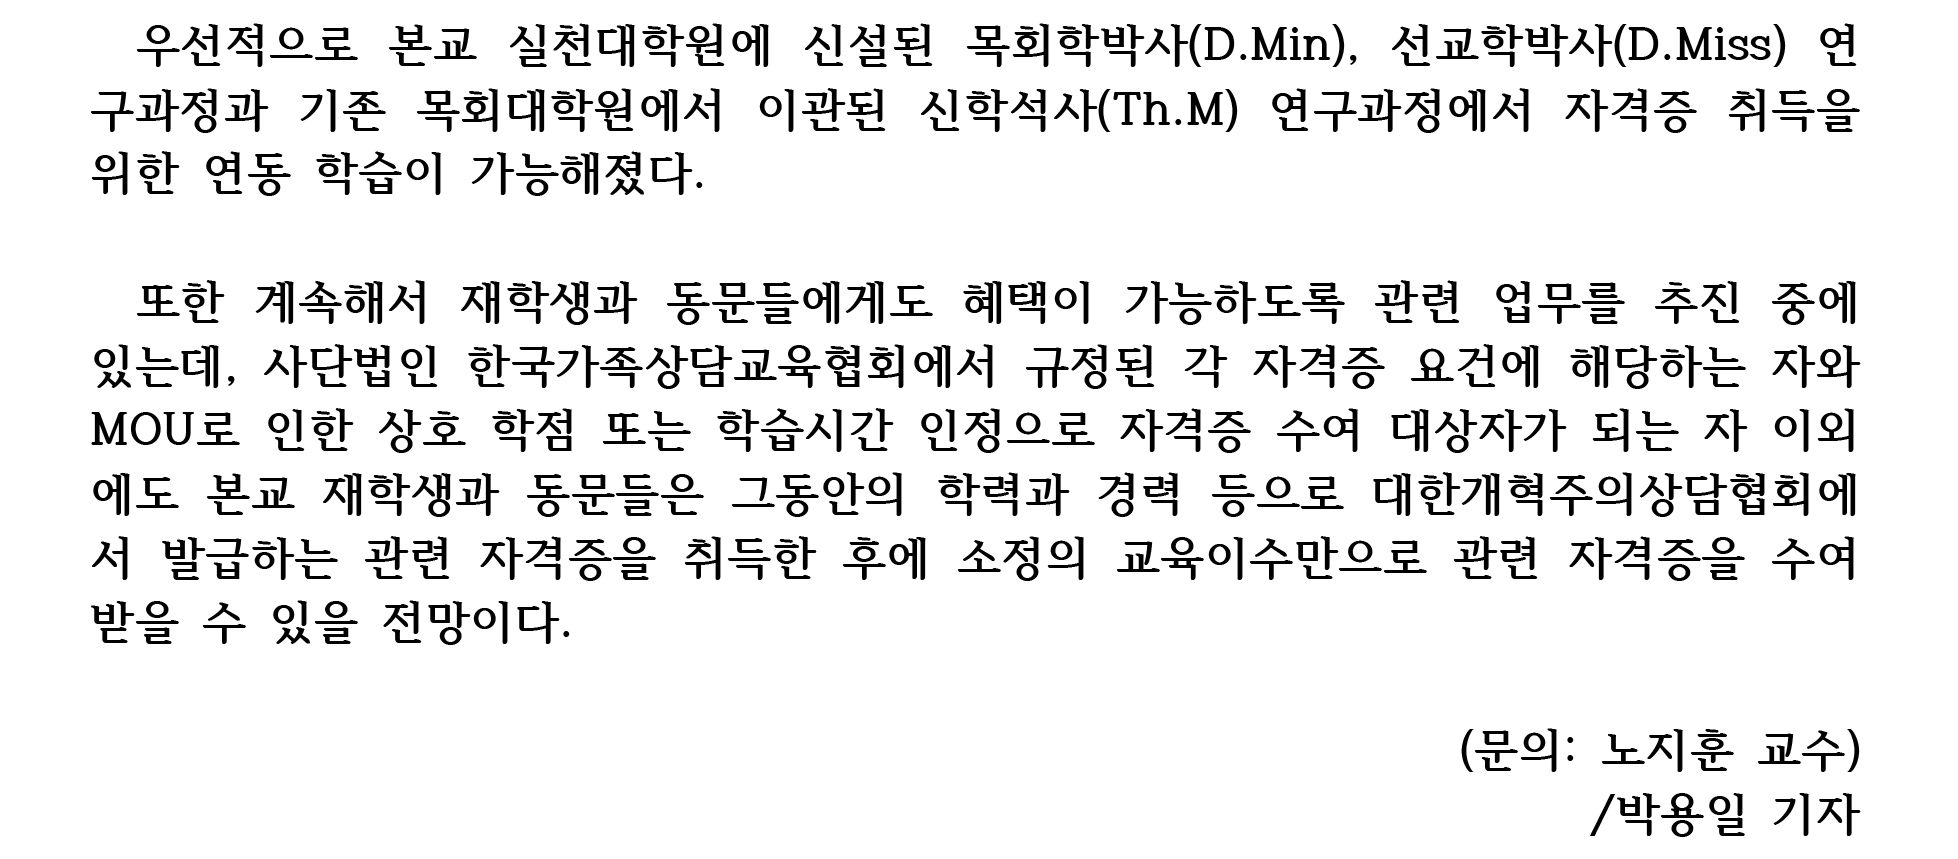 한국가족상담교육협회MOU_보도자료02.jpg